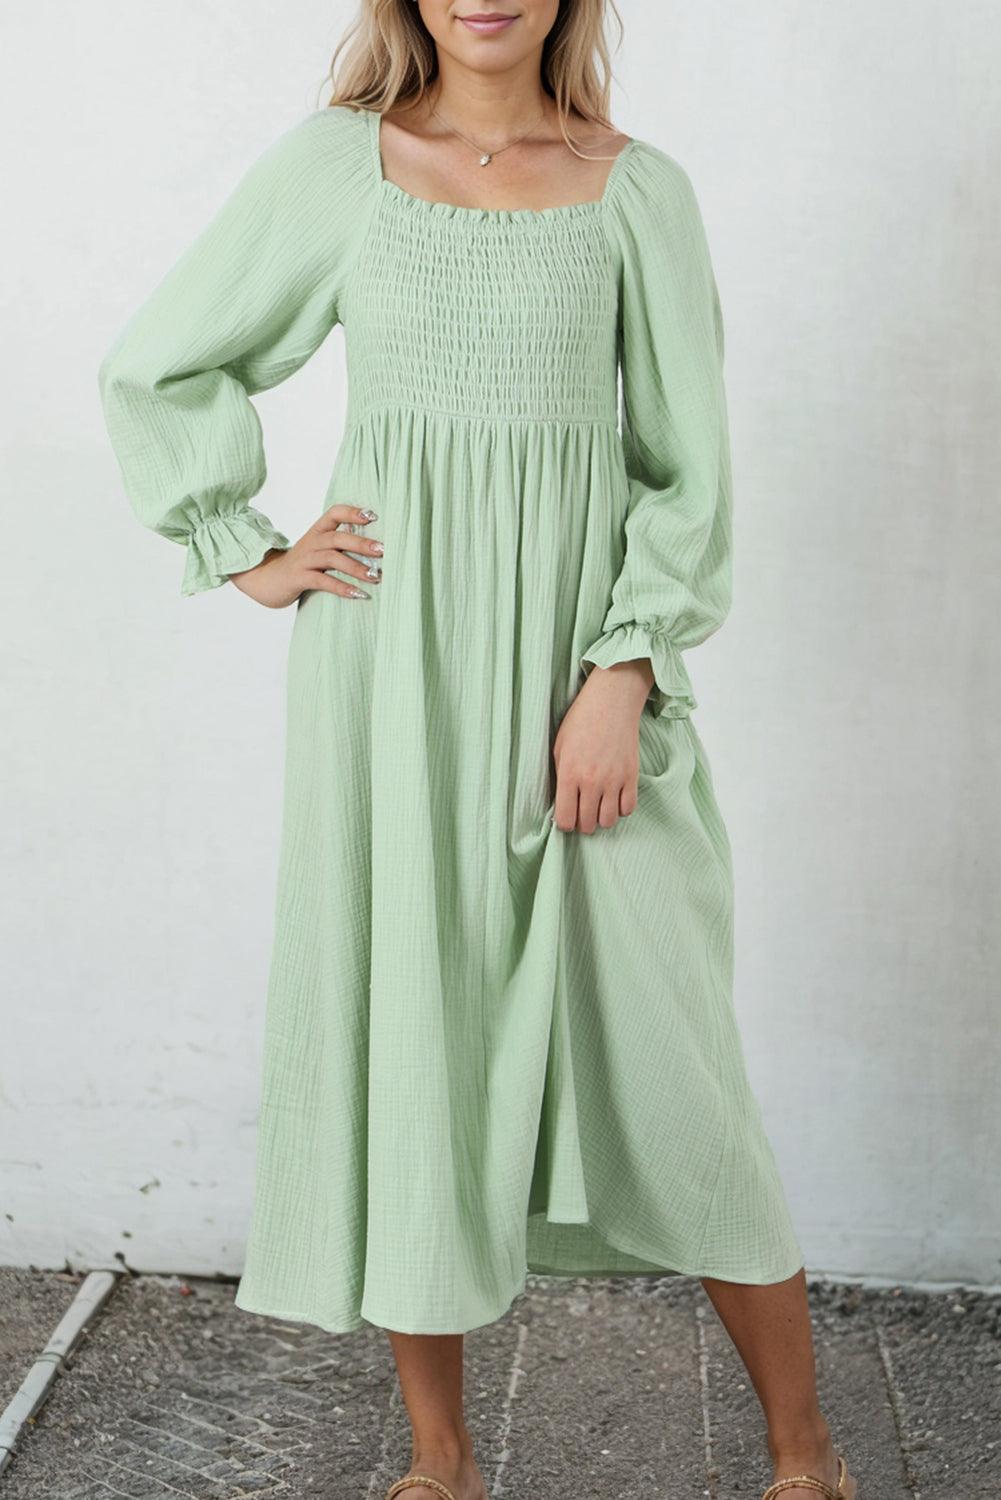 Green Smoked Flounce Sleeve Textured Empire Waist Dress - L & M Kee, LLC